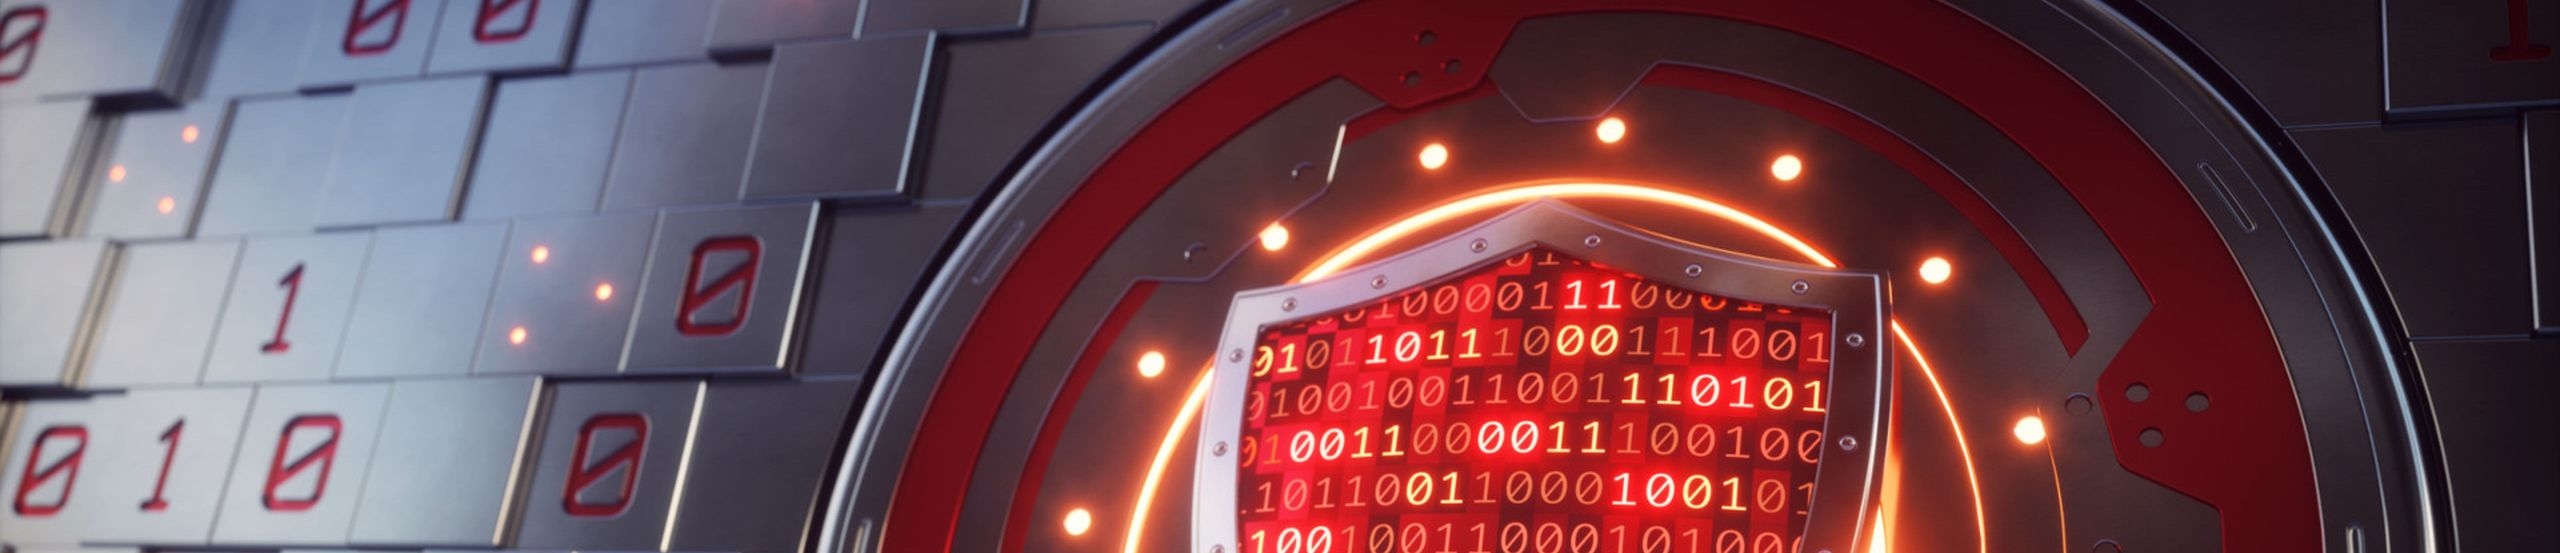 Rotes Firewall-Schildsymbol vor futuristischer Kulisse mit Nullen und Einsen 